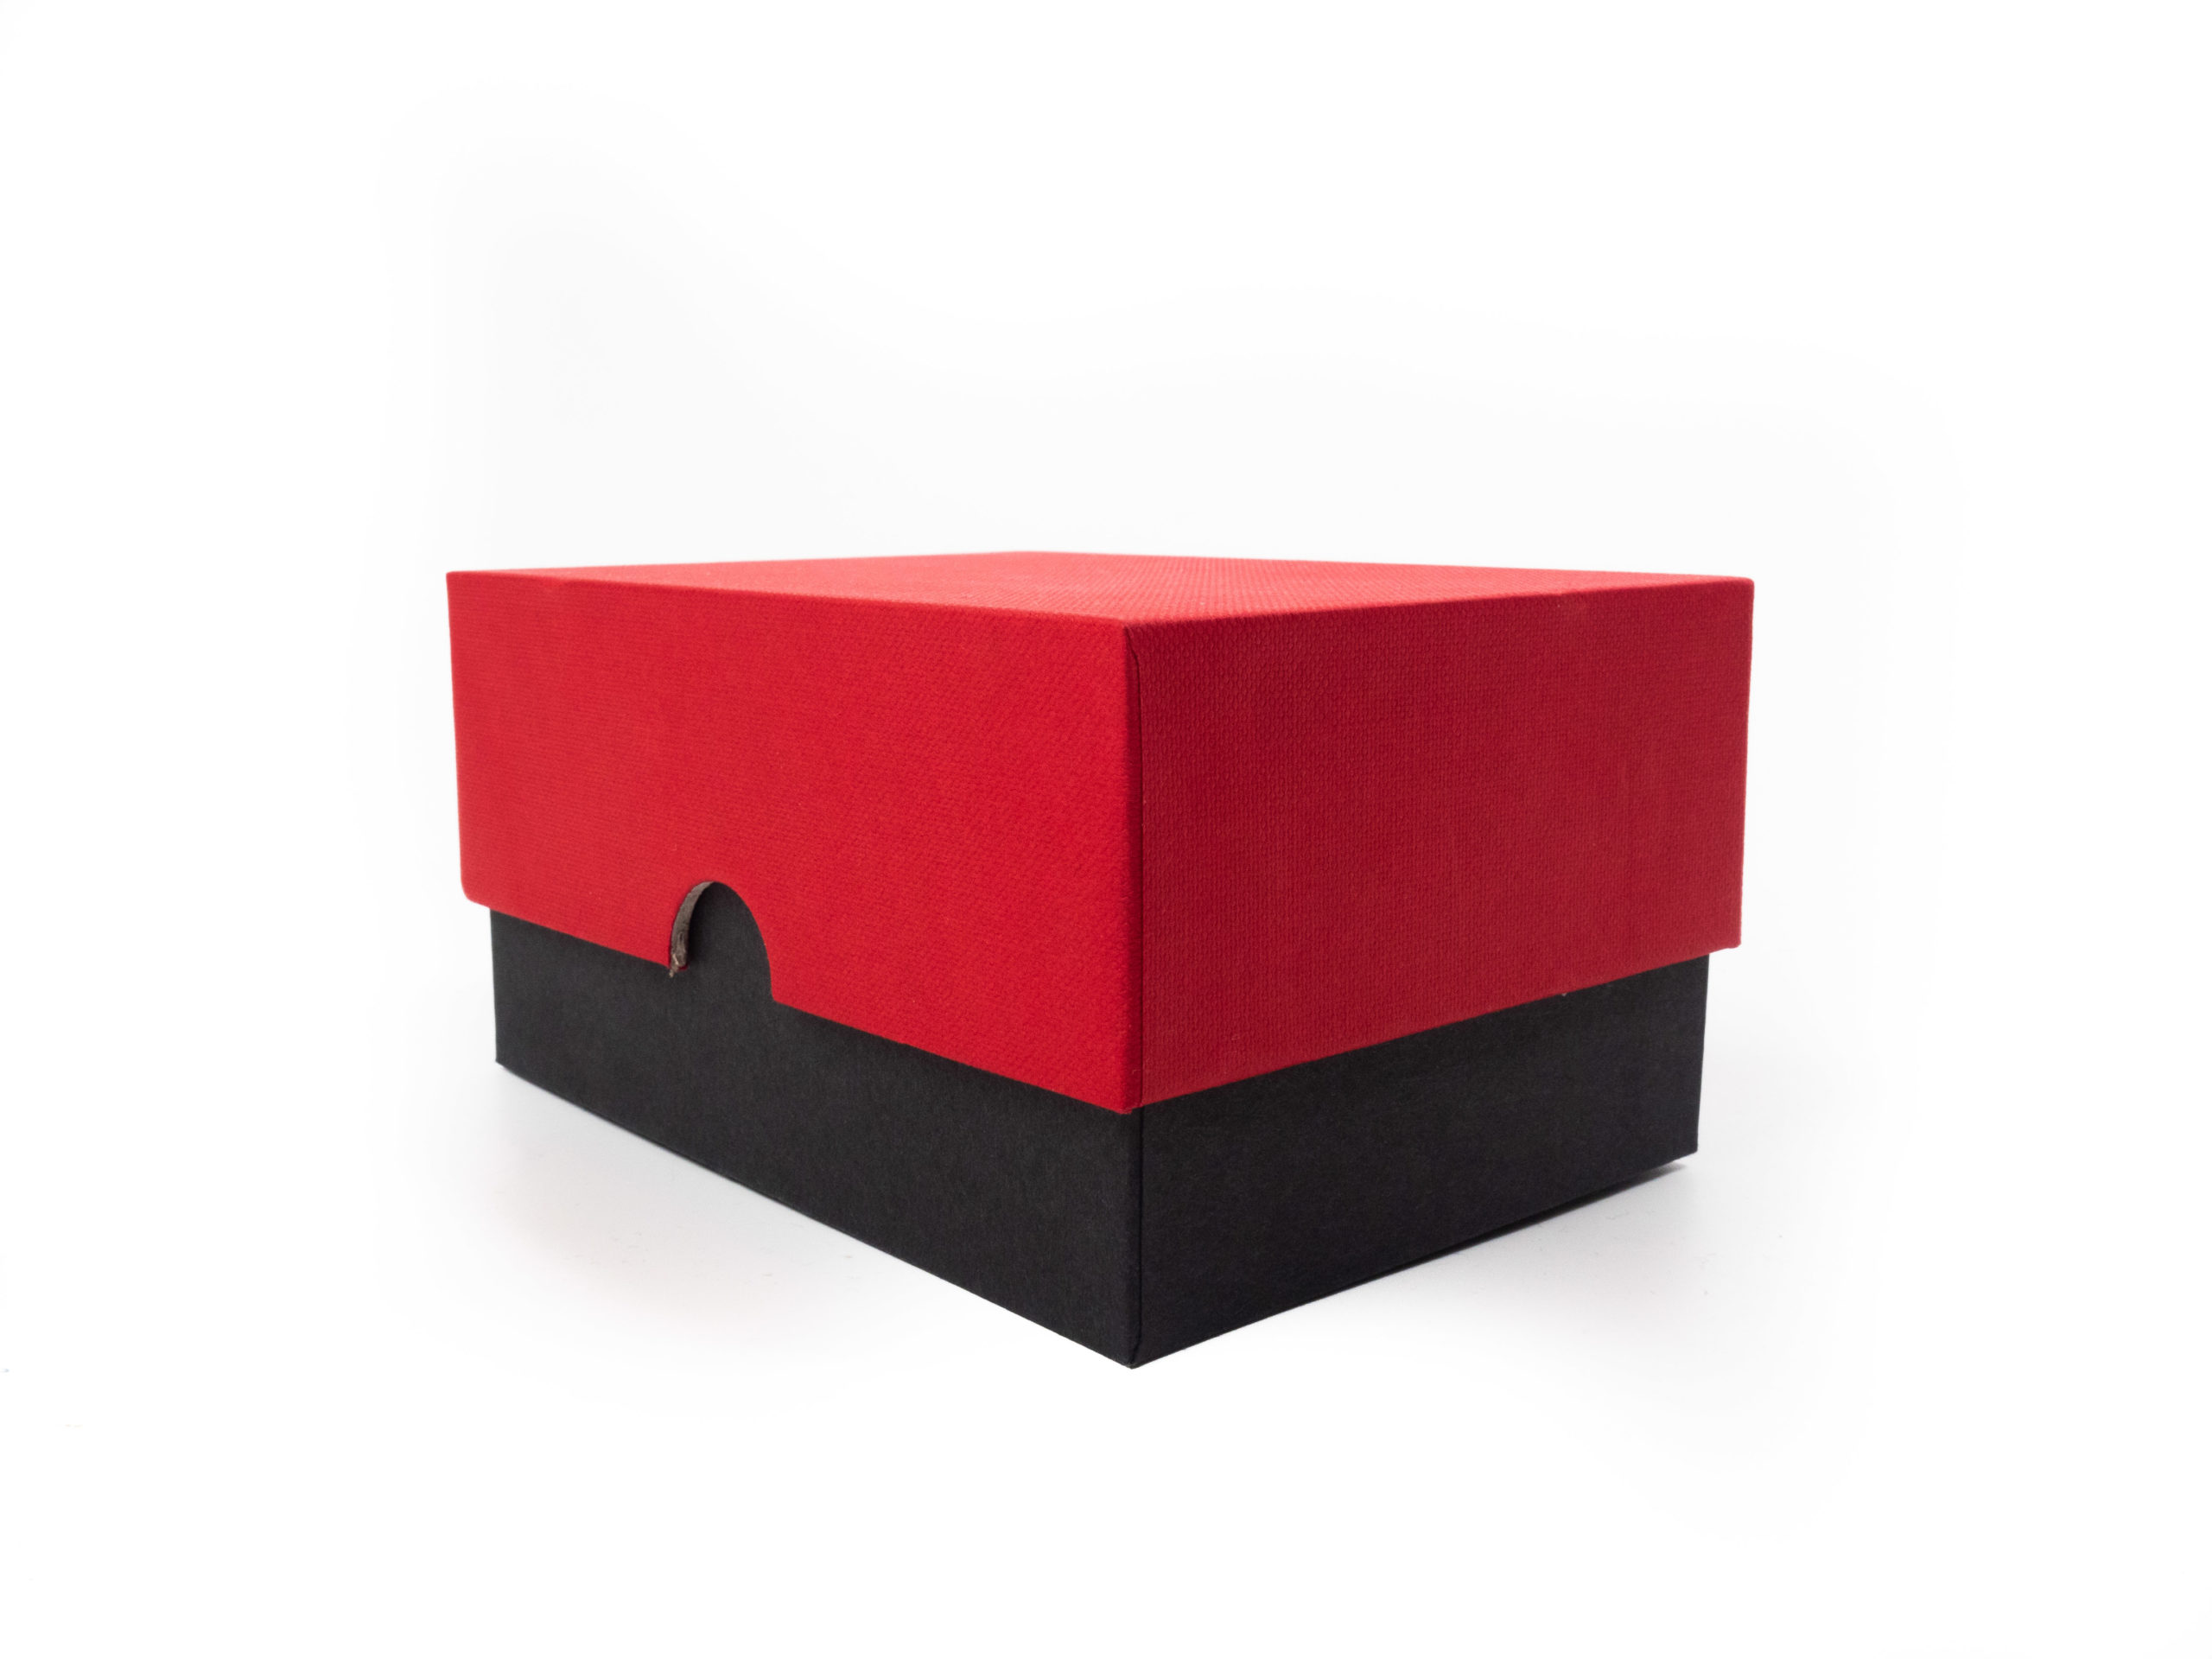 Dárková krabice v provedení víko/dno byla vyrobena na zakázku ve dvou barevném provedení. Víčko je v červené barvě se strukturou a dno v černém potahu bez struktury. Na víčku černá ražba loga.